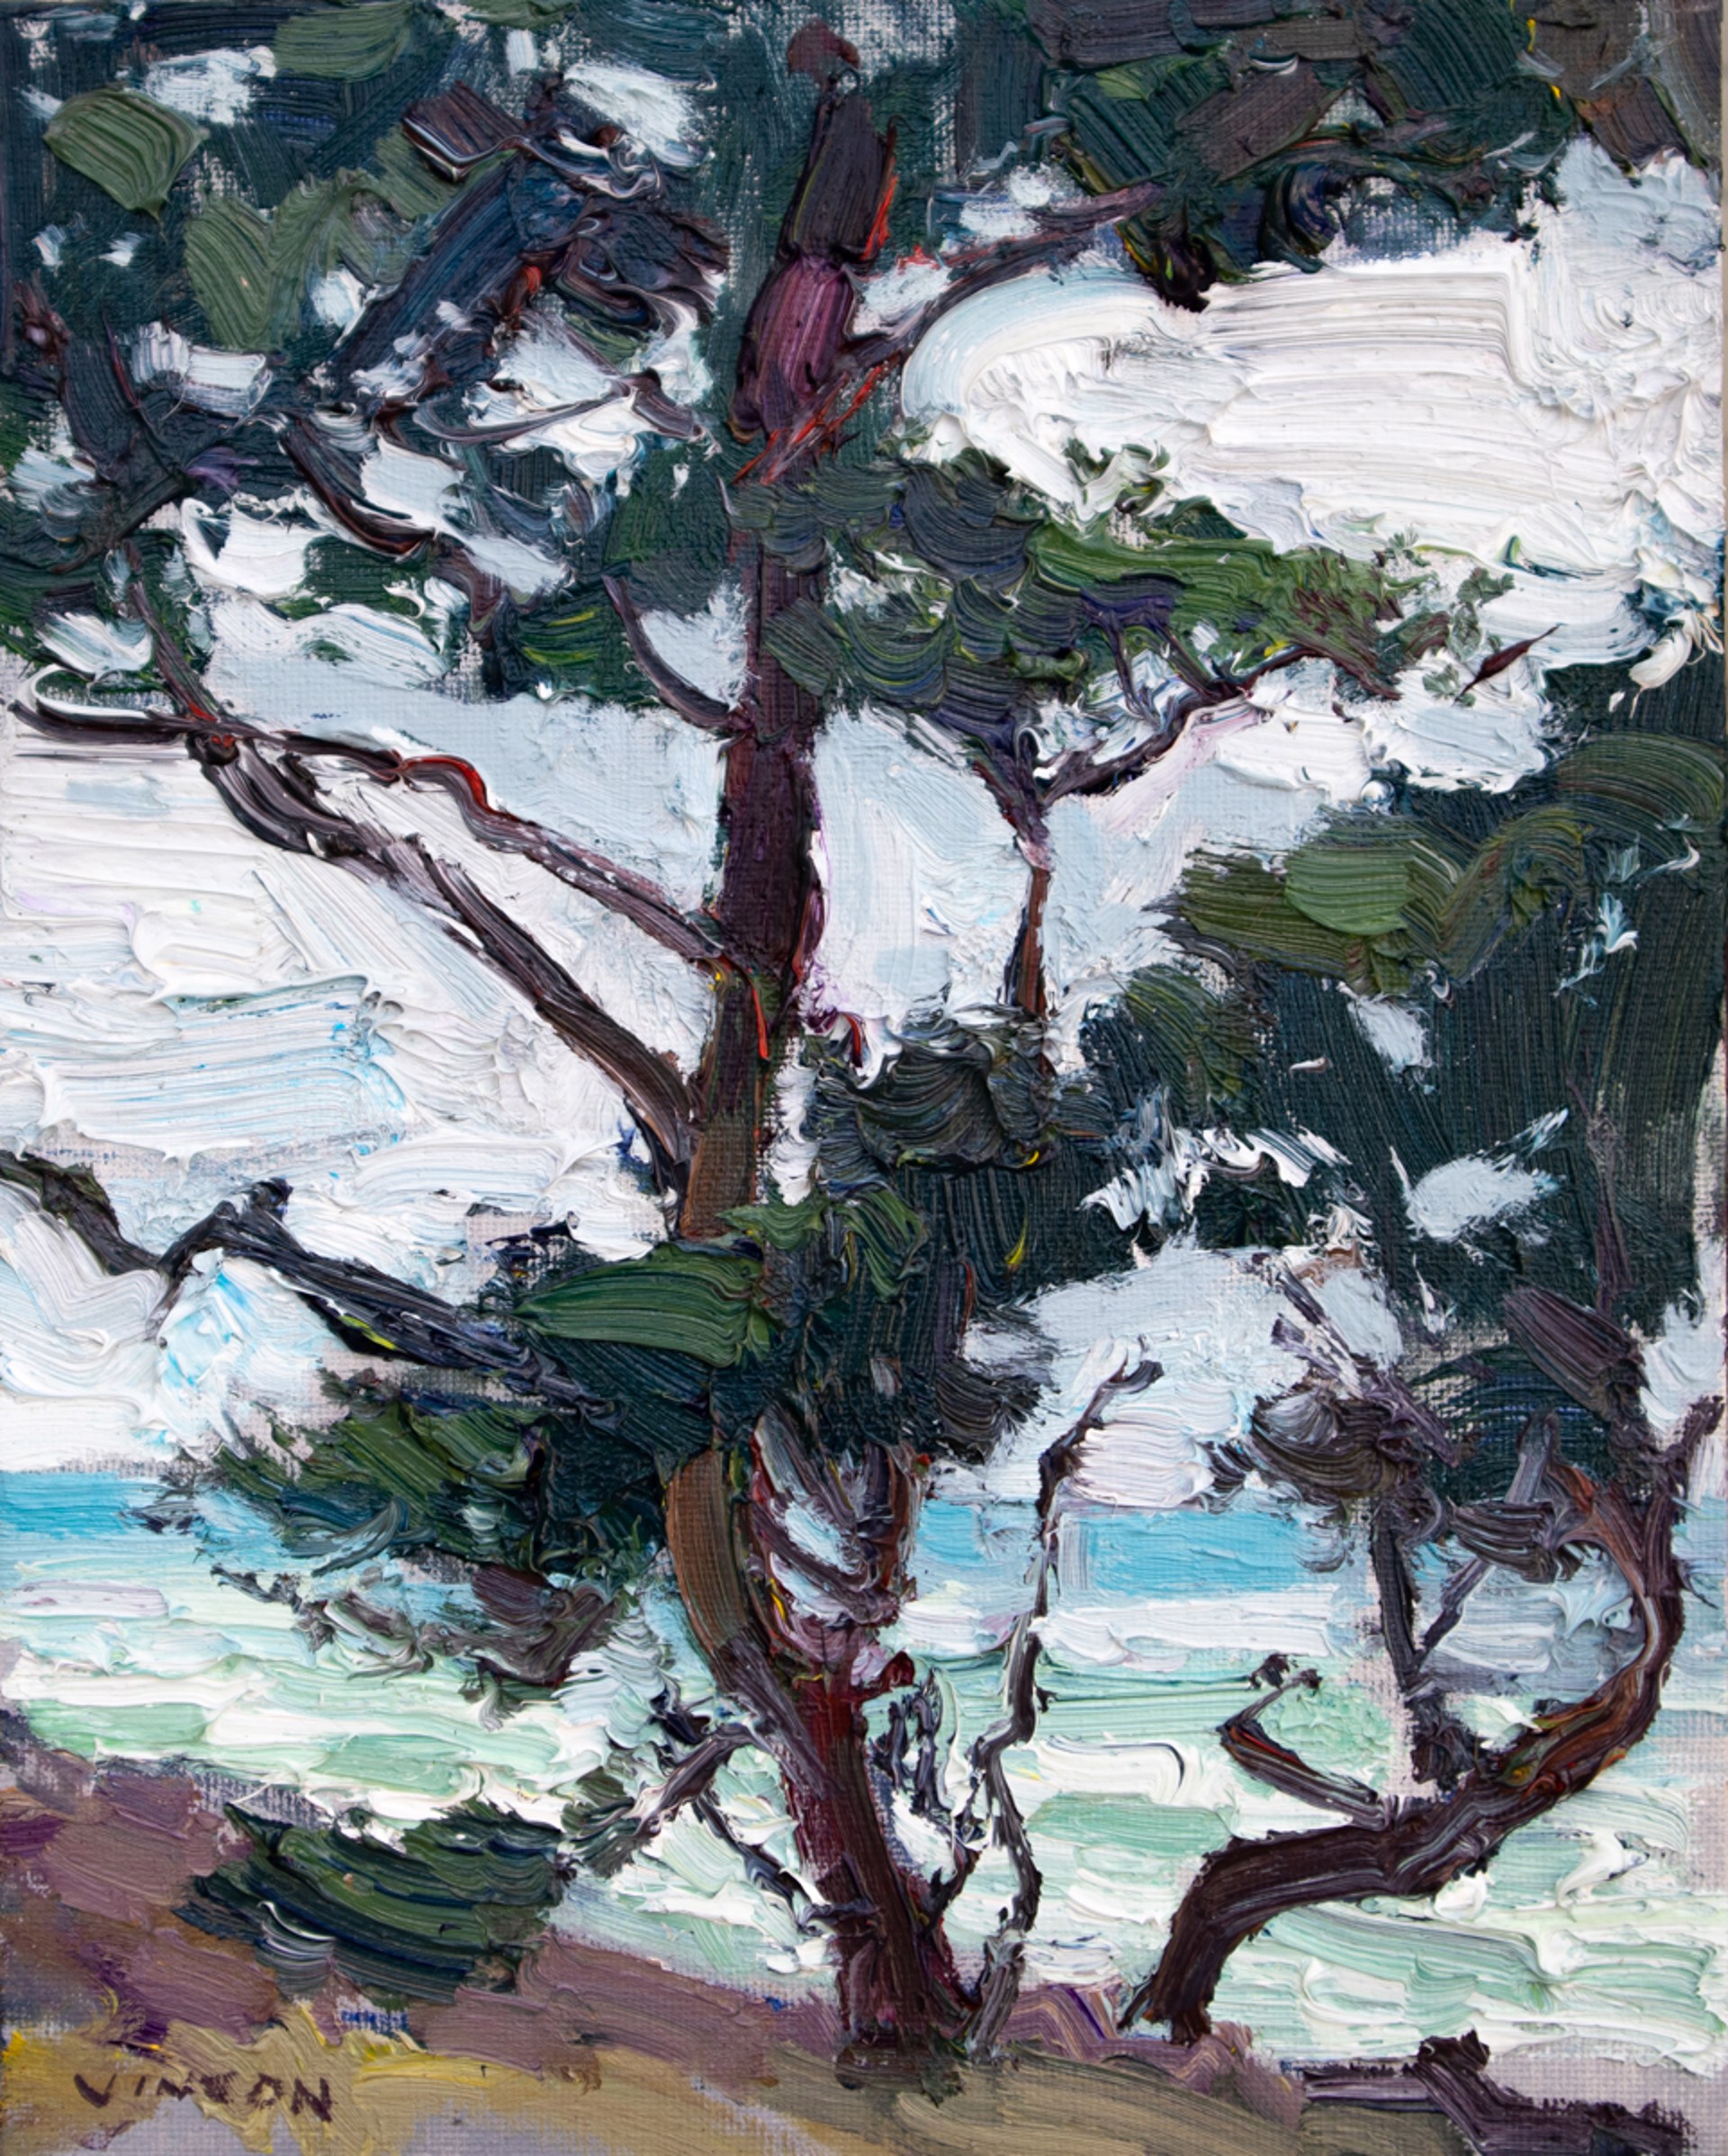 Costal Tree by Turner Vinson